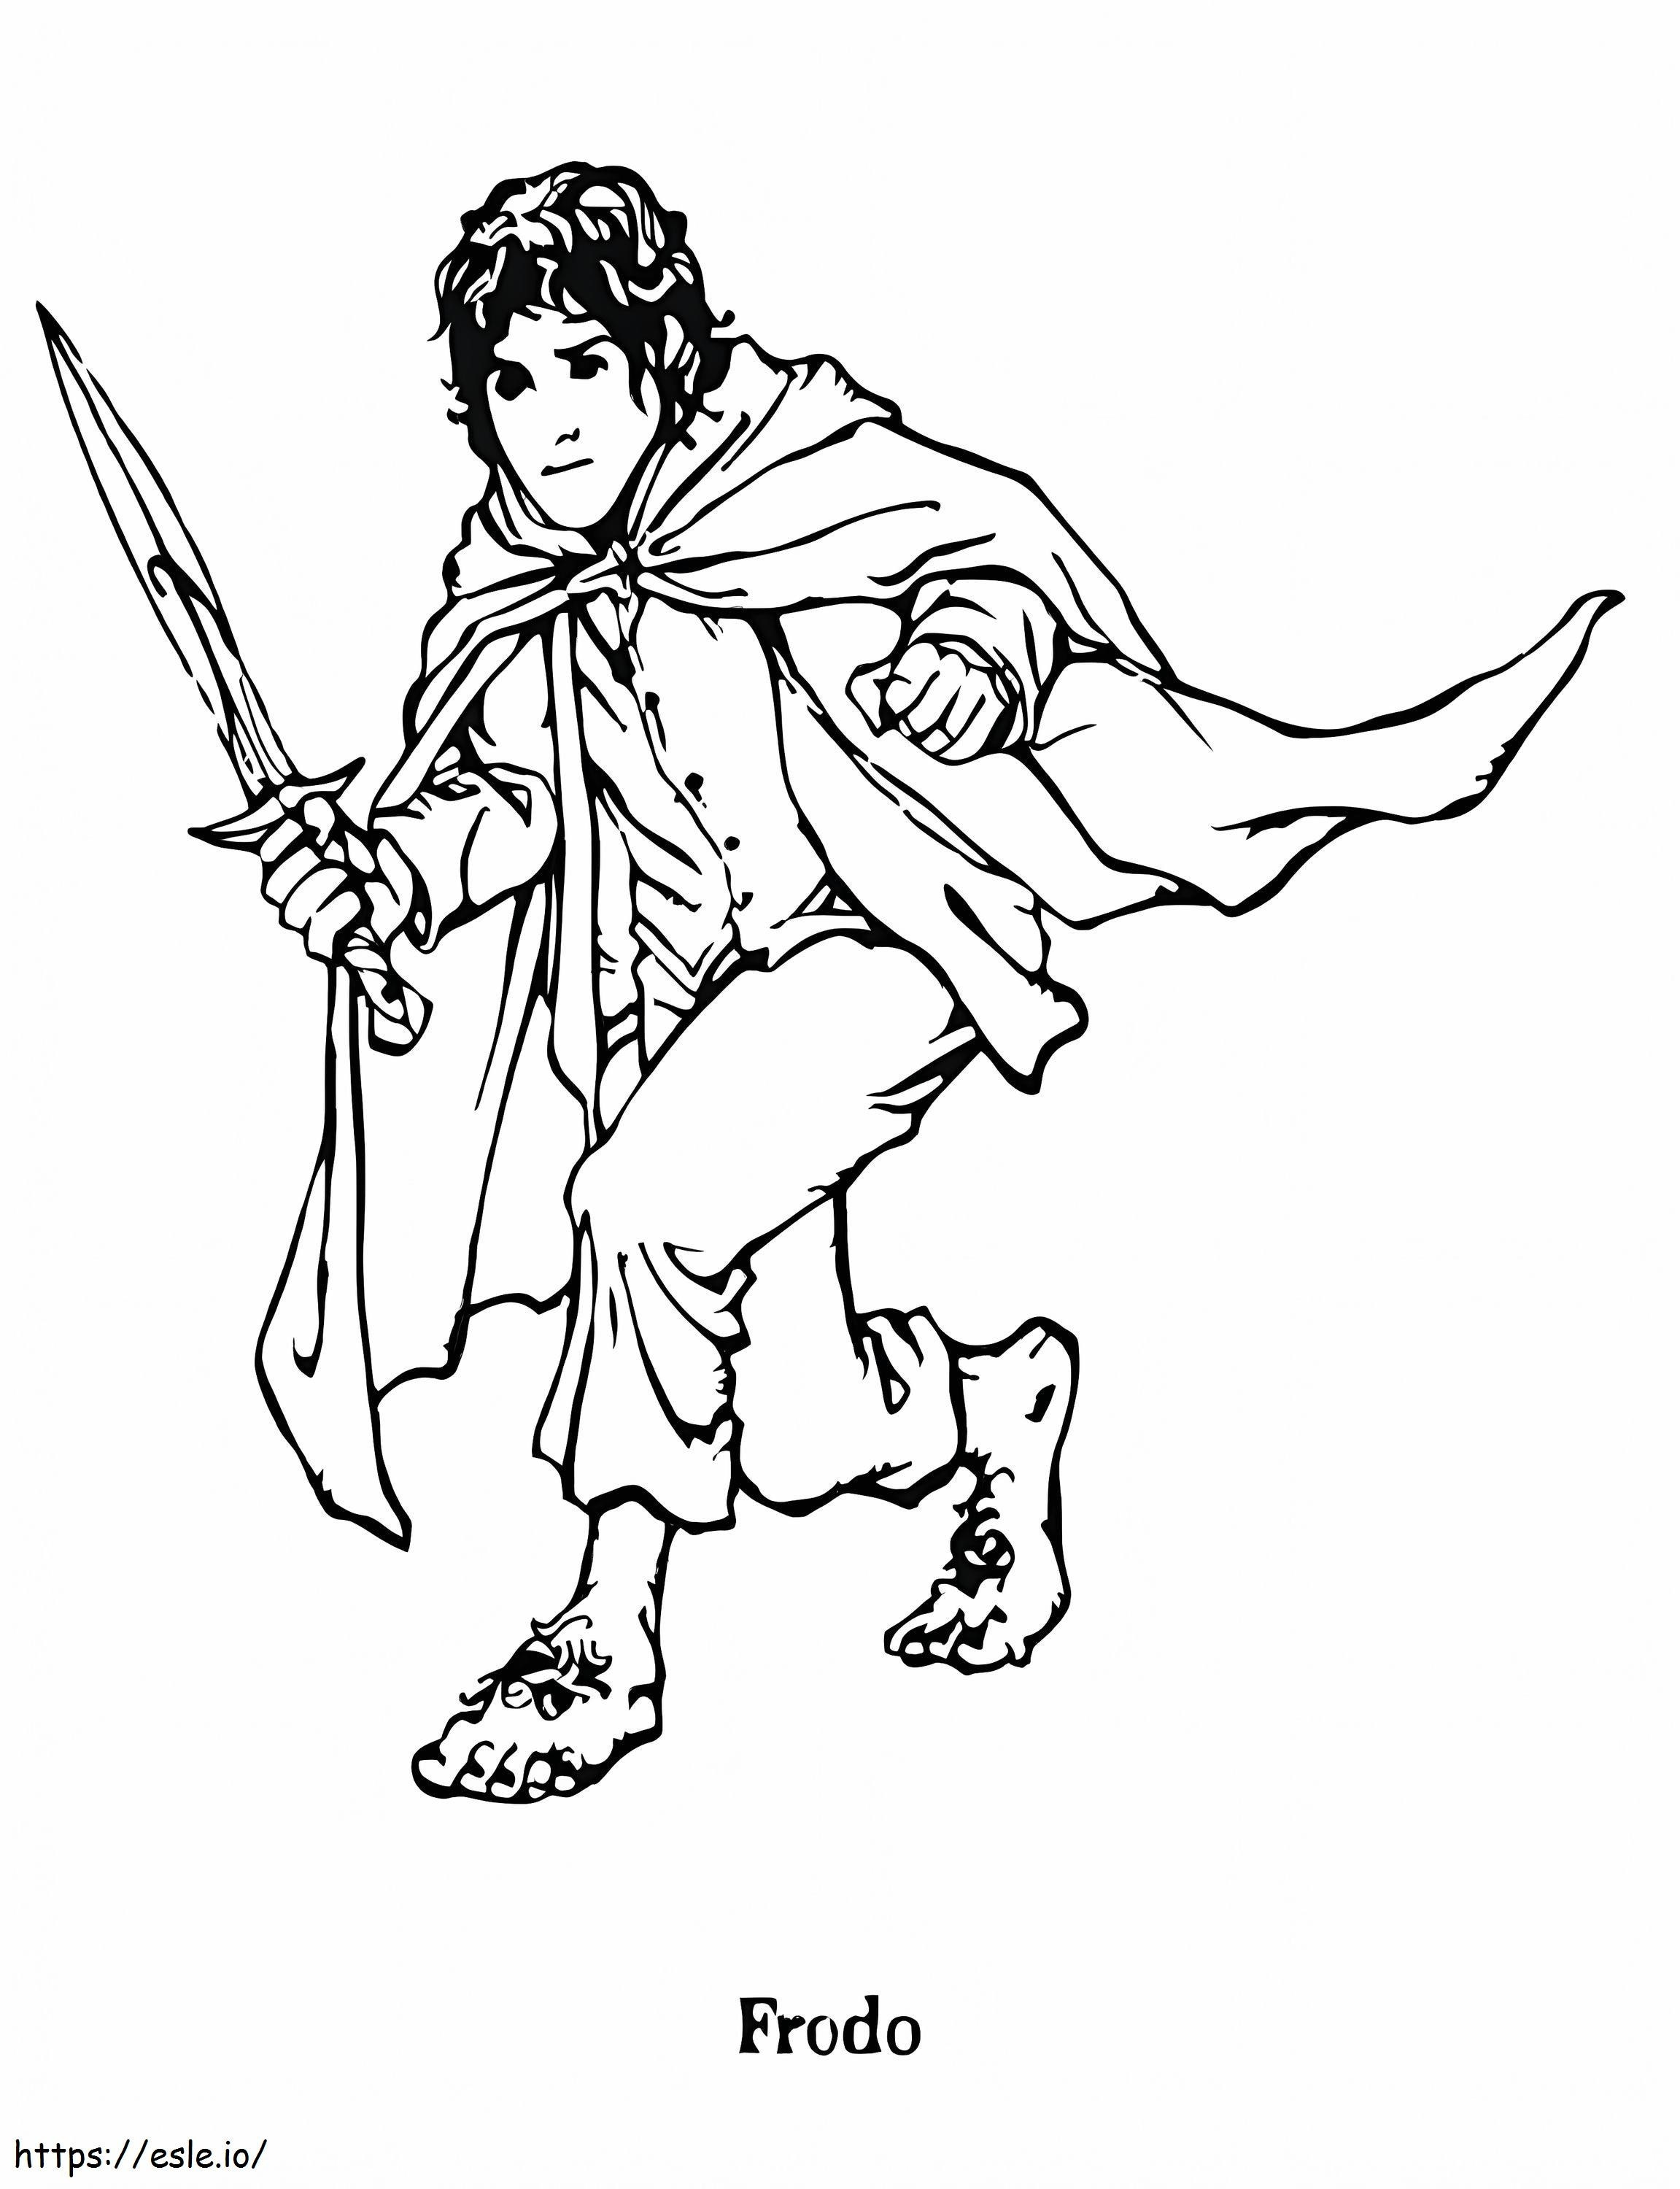 Frodo Bolseiro para colorir